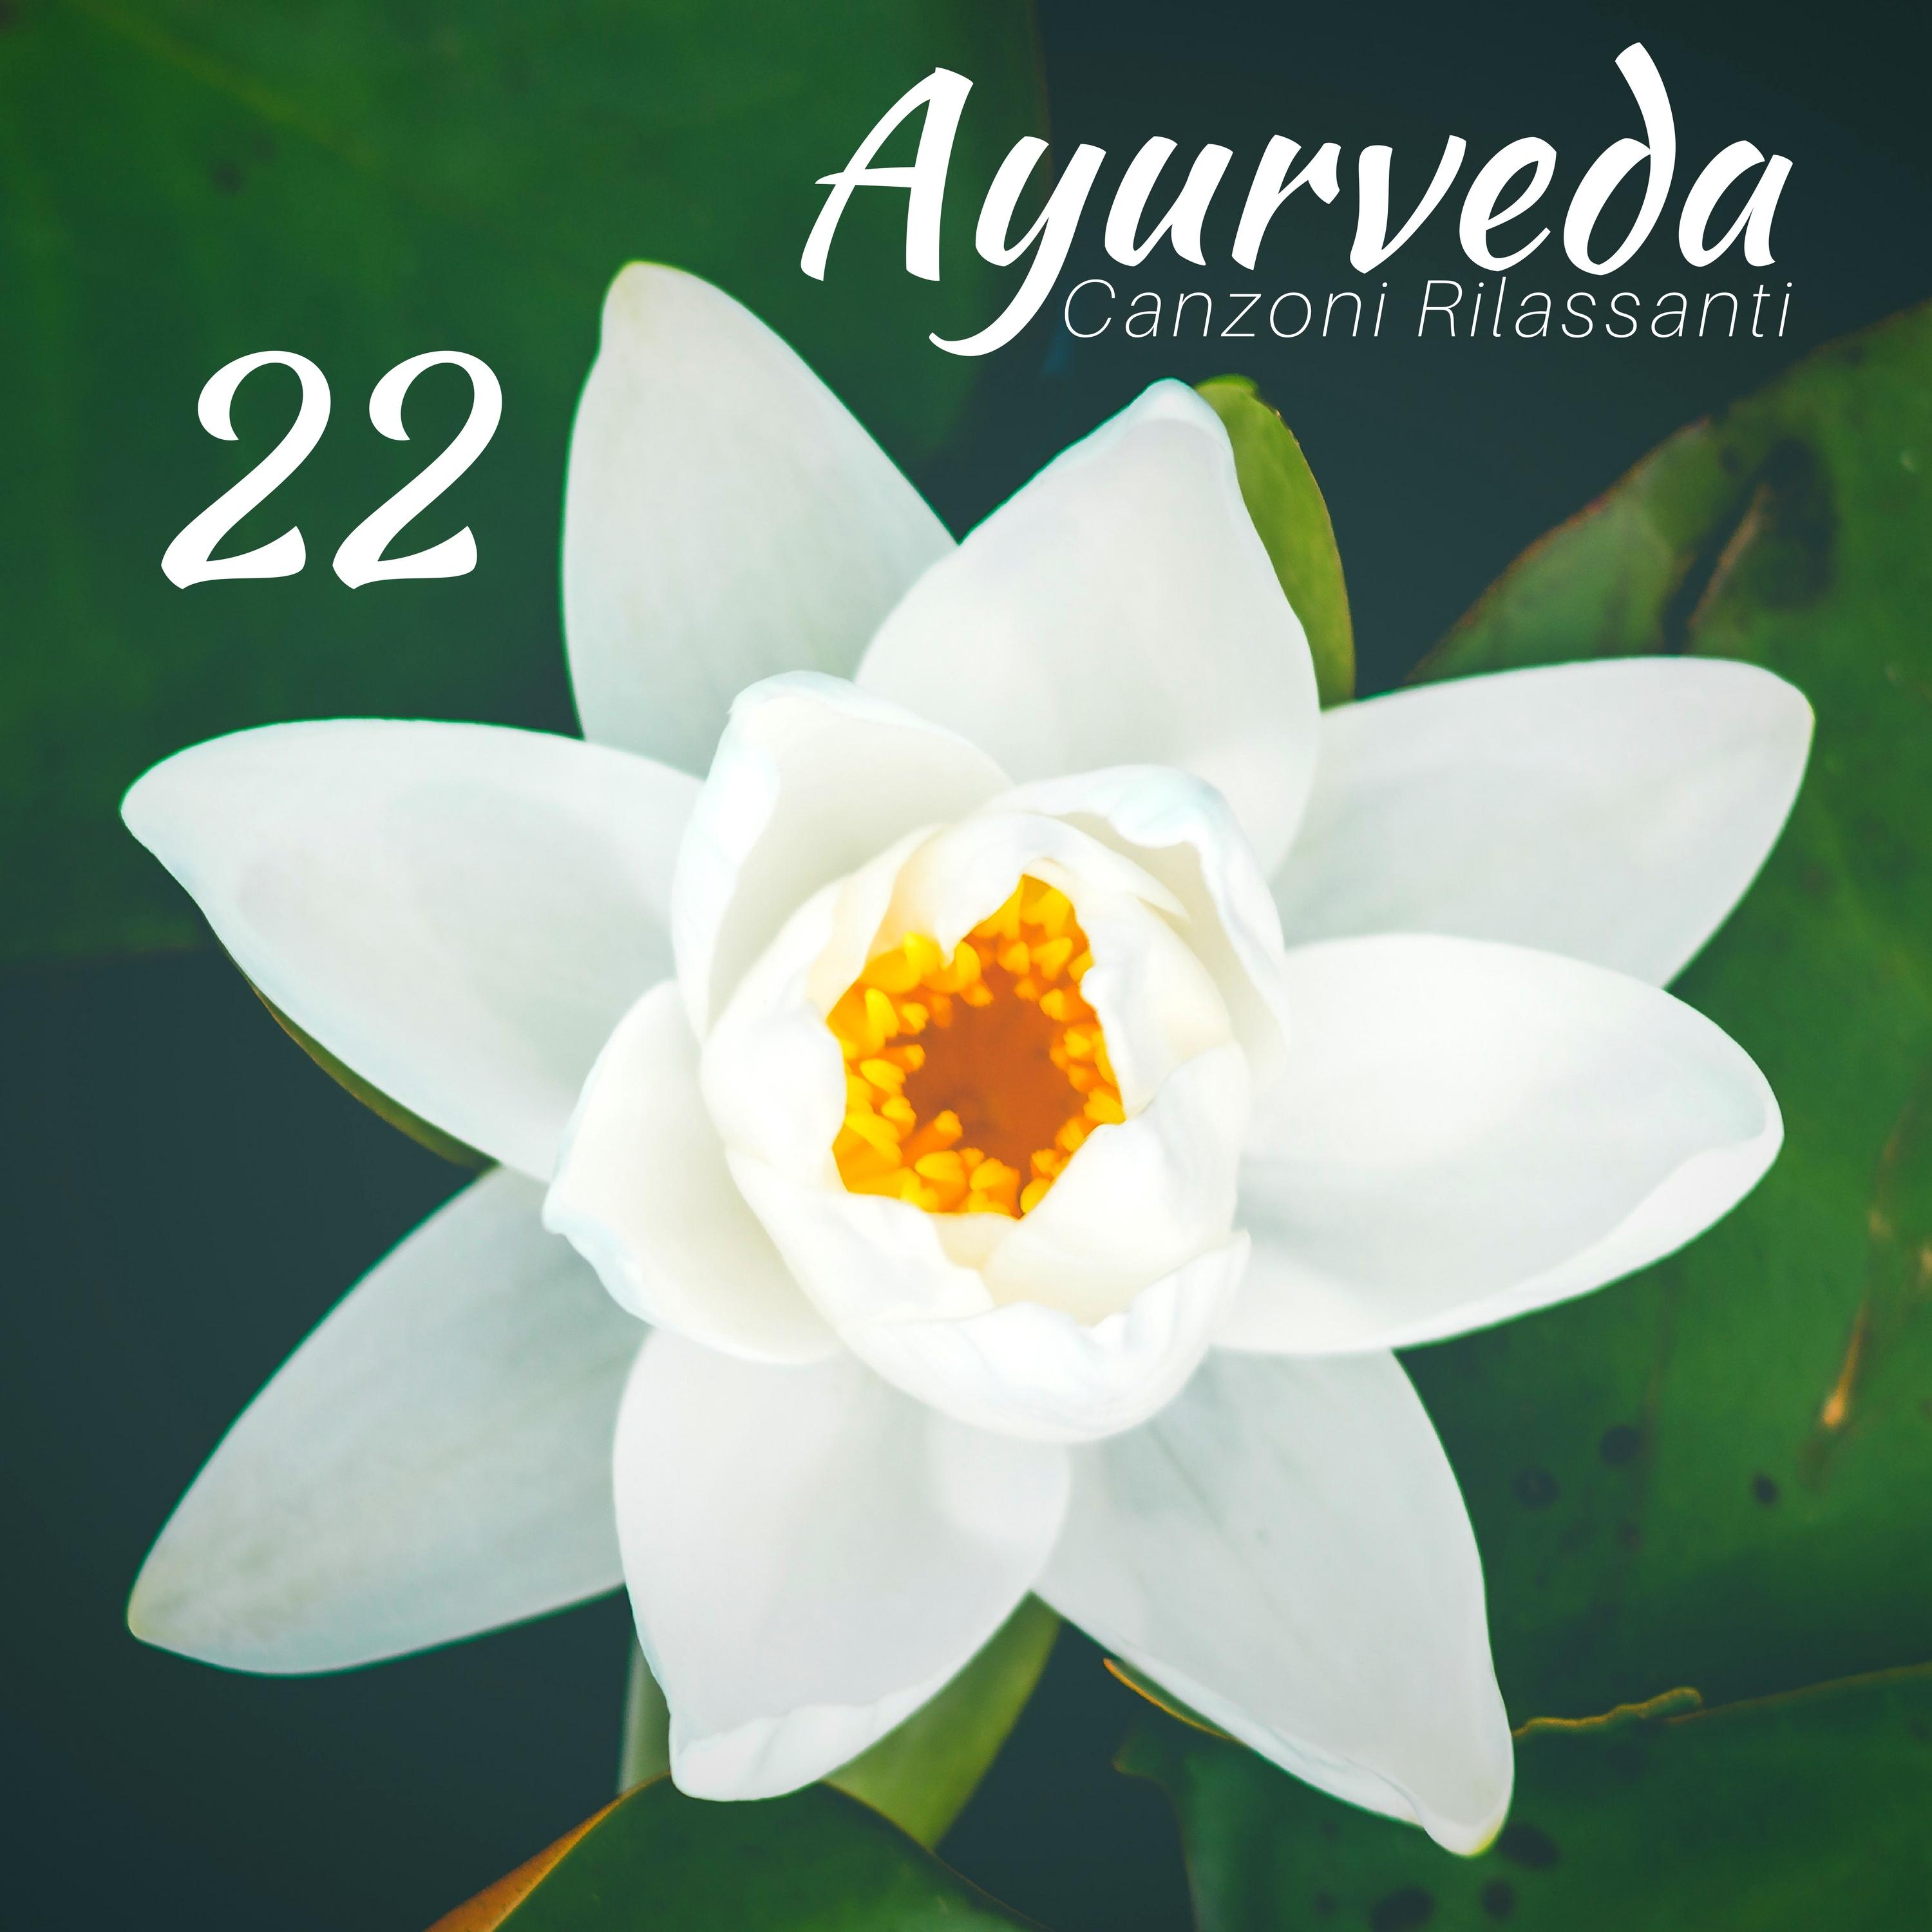 22 Ayurveda Vol 1 - Canzoni Rilassanti per Massaggio Ayurvedico, Musica Orientale Strumentale New Age con Suoni della Natura